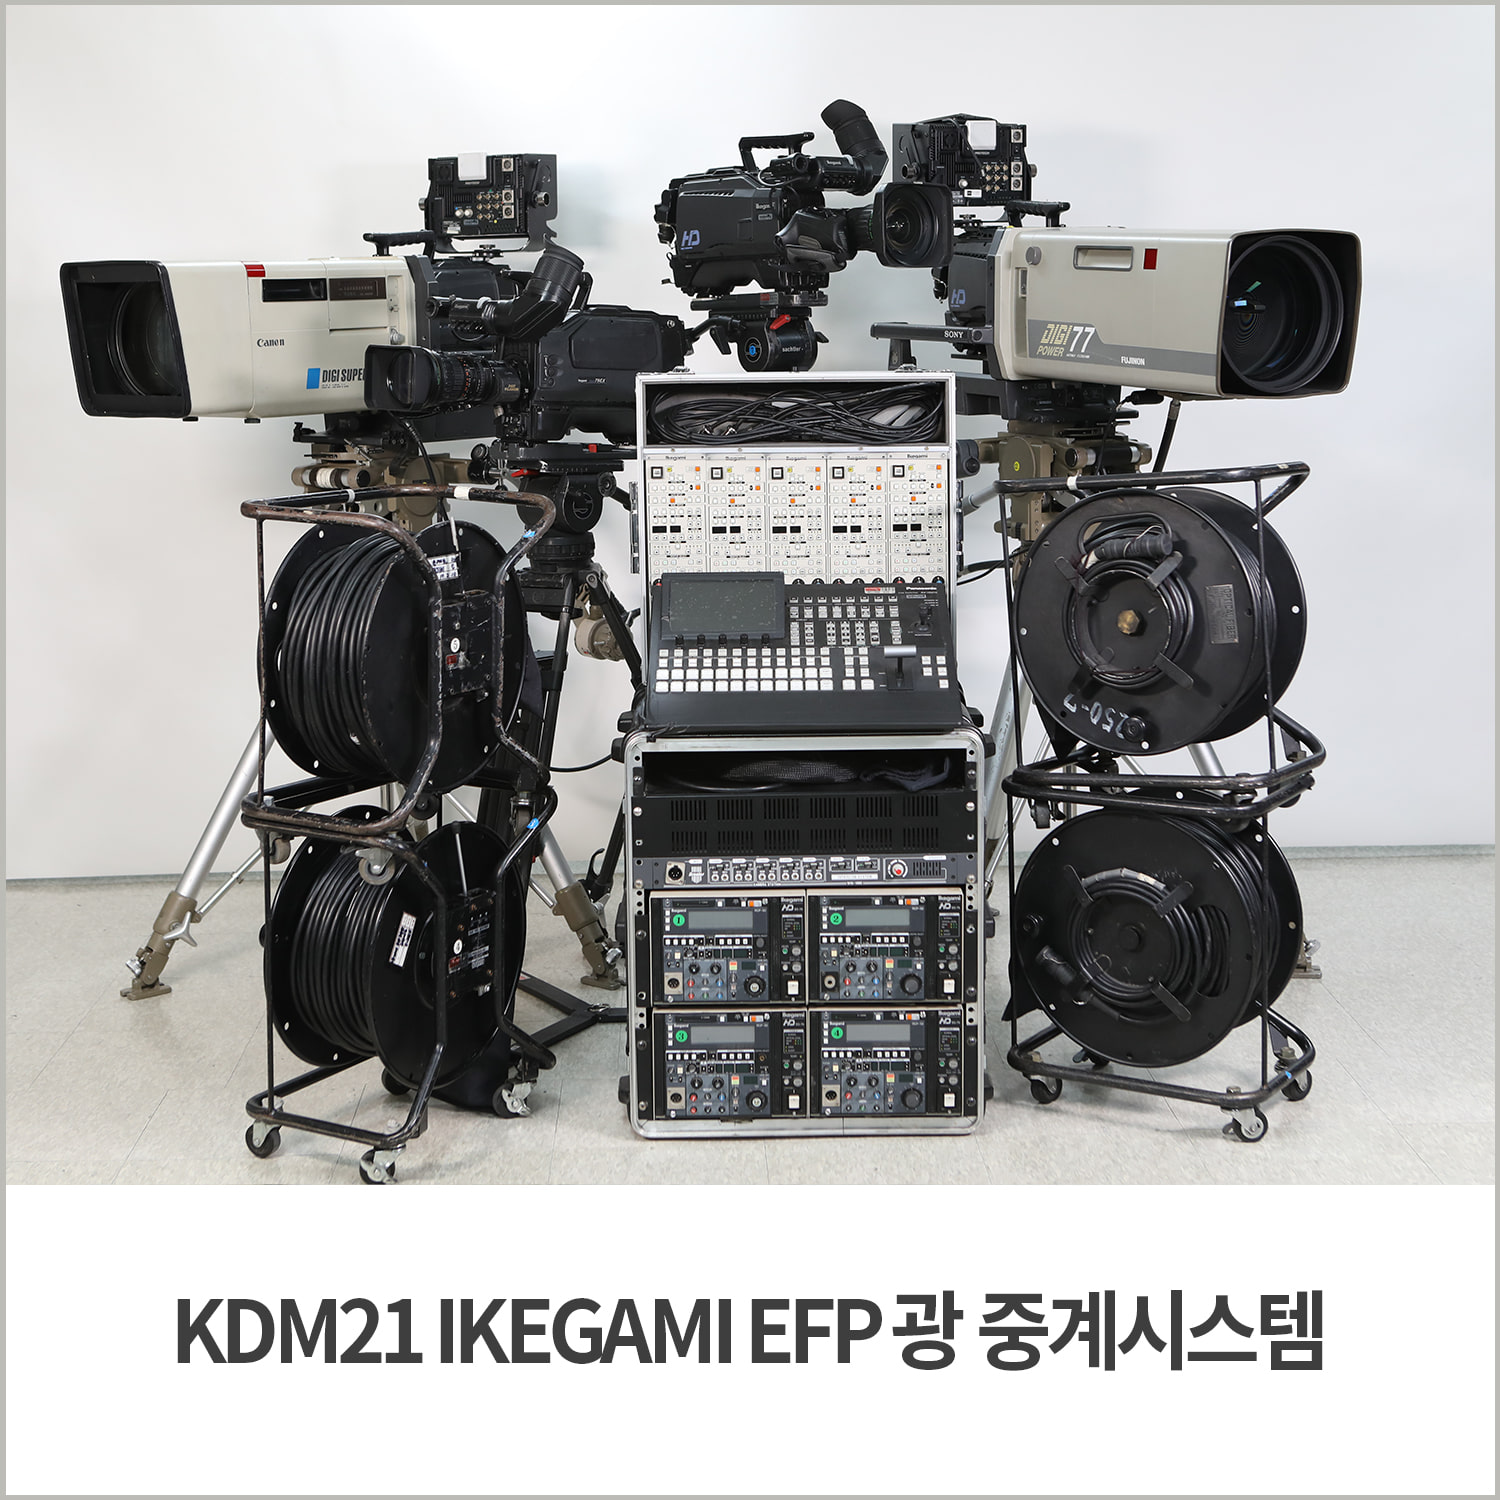 [중계시스템] KDM21 IKEGAMI EFP 광 중계시스템